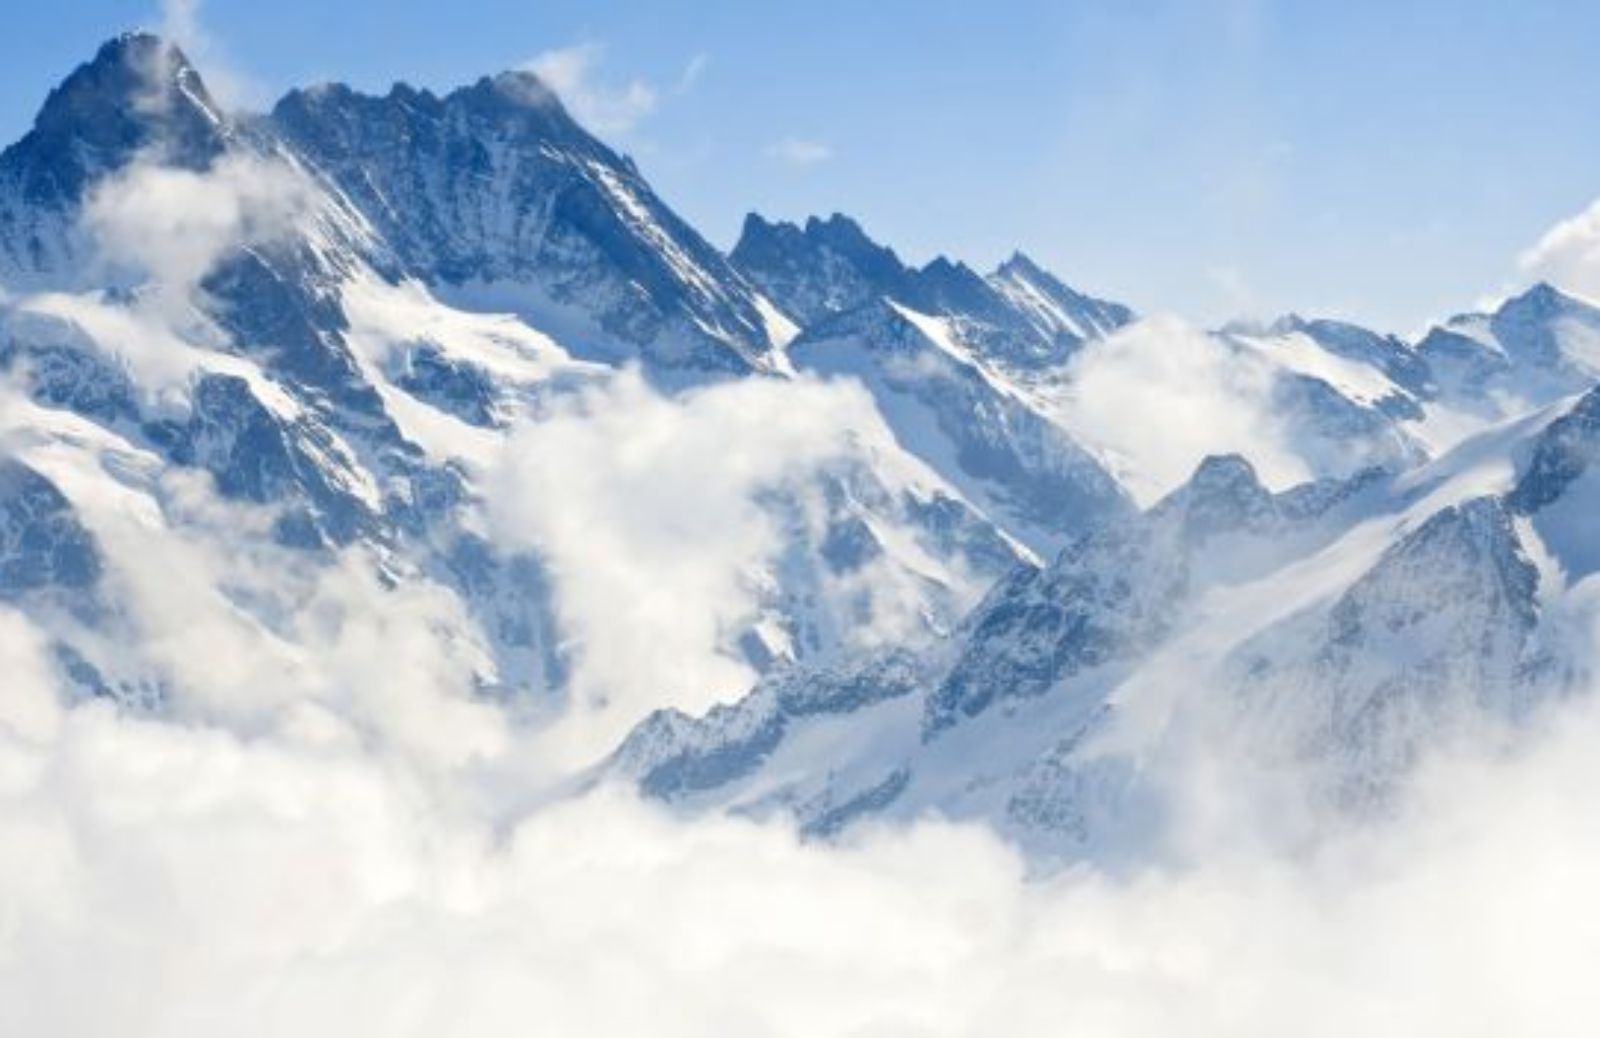 Share Stelvio: tra 80 anni i ghiacciai delle Alpi potrebbero scomparire